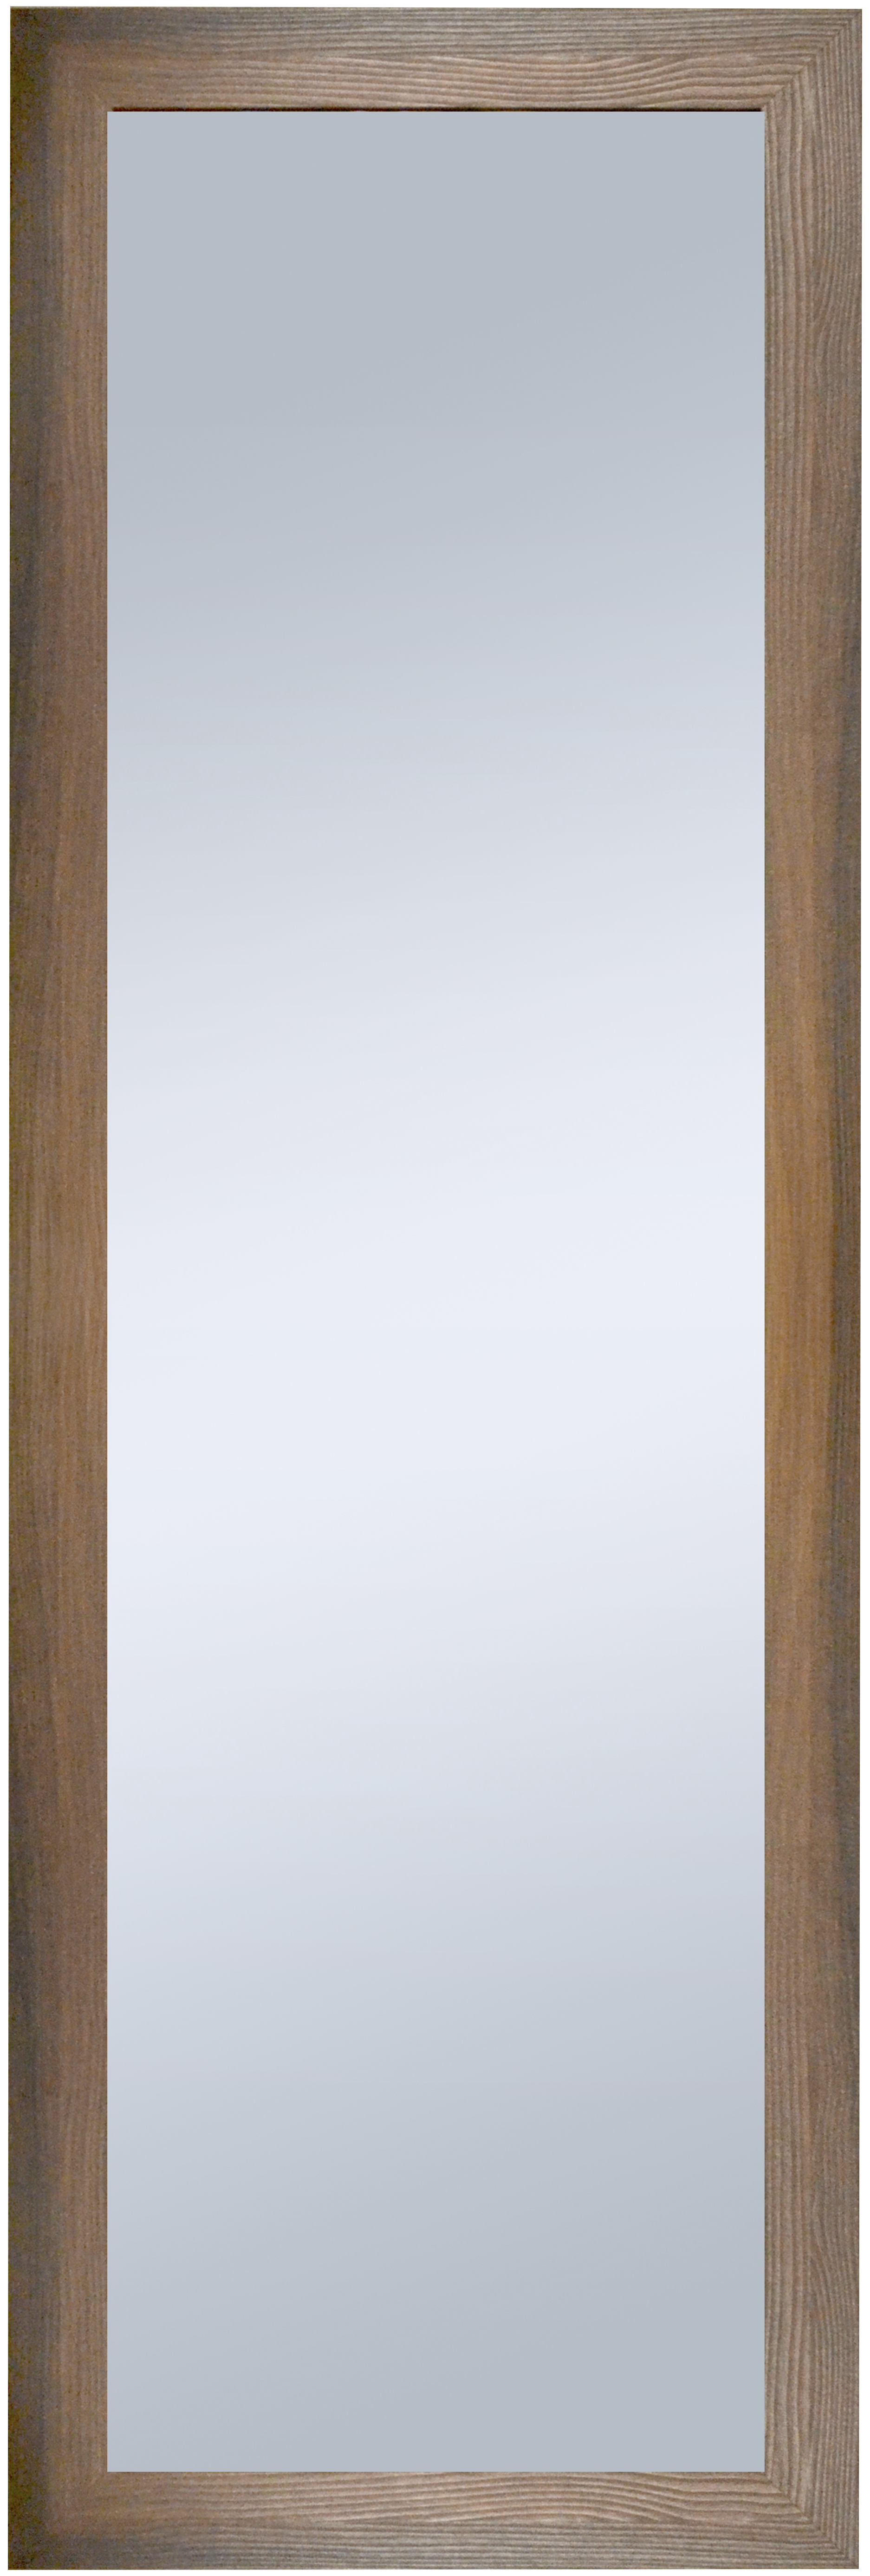 Espejo enmarcado rectangular pierre ébano 152 x 52 cm